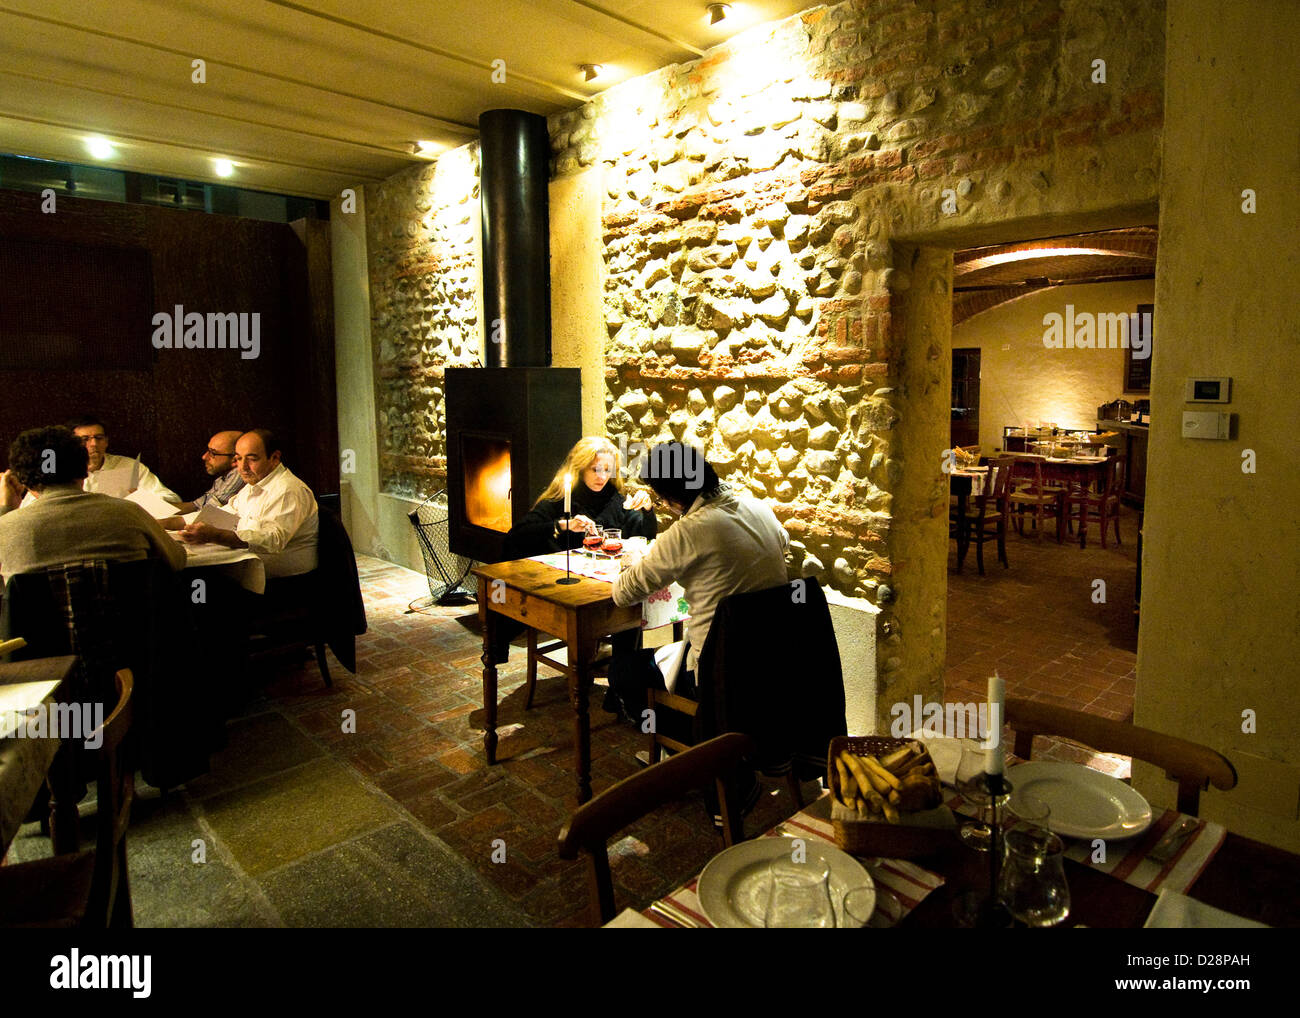 Romantic dinner at the Osteria del Boccon divino in Bra, Italy Stock Photo  - Alamy